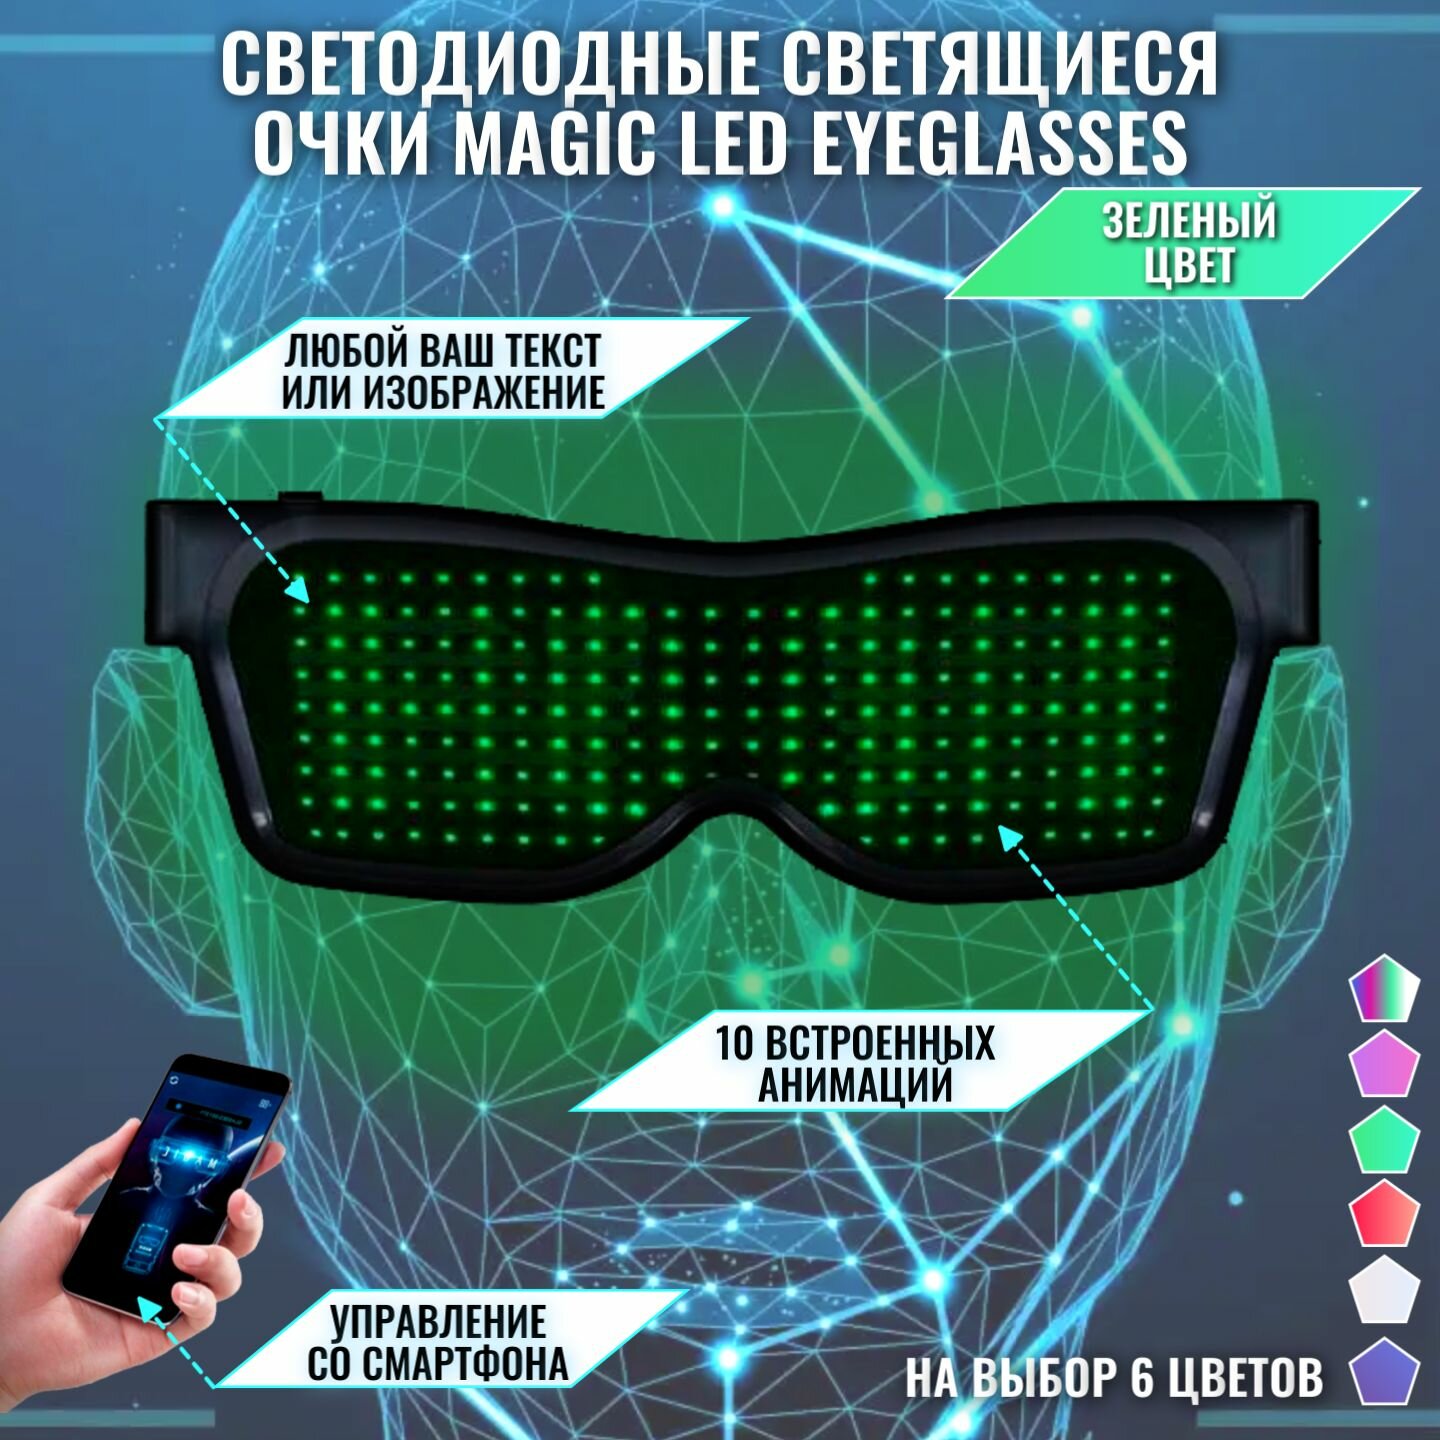 Светодиодные светящиеся очки Magic LED Eyeglasses Bluetooth зеленые